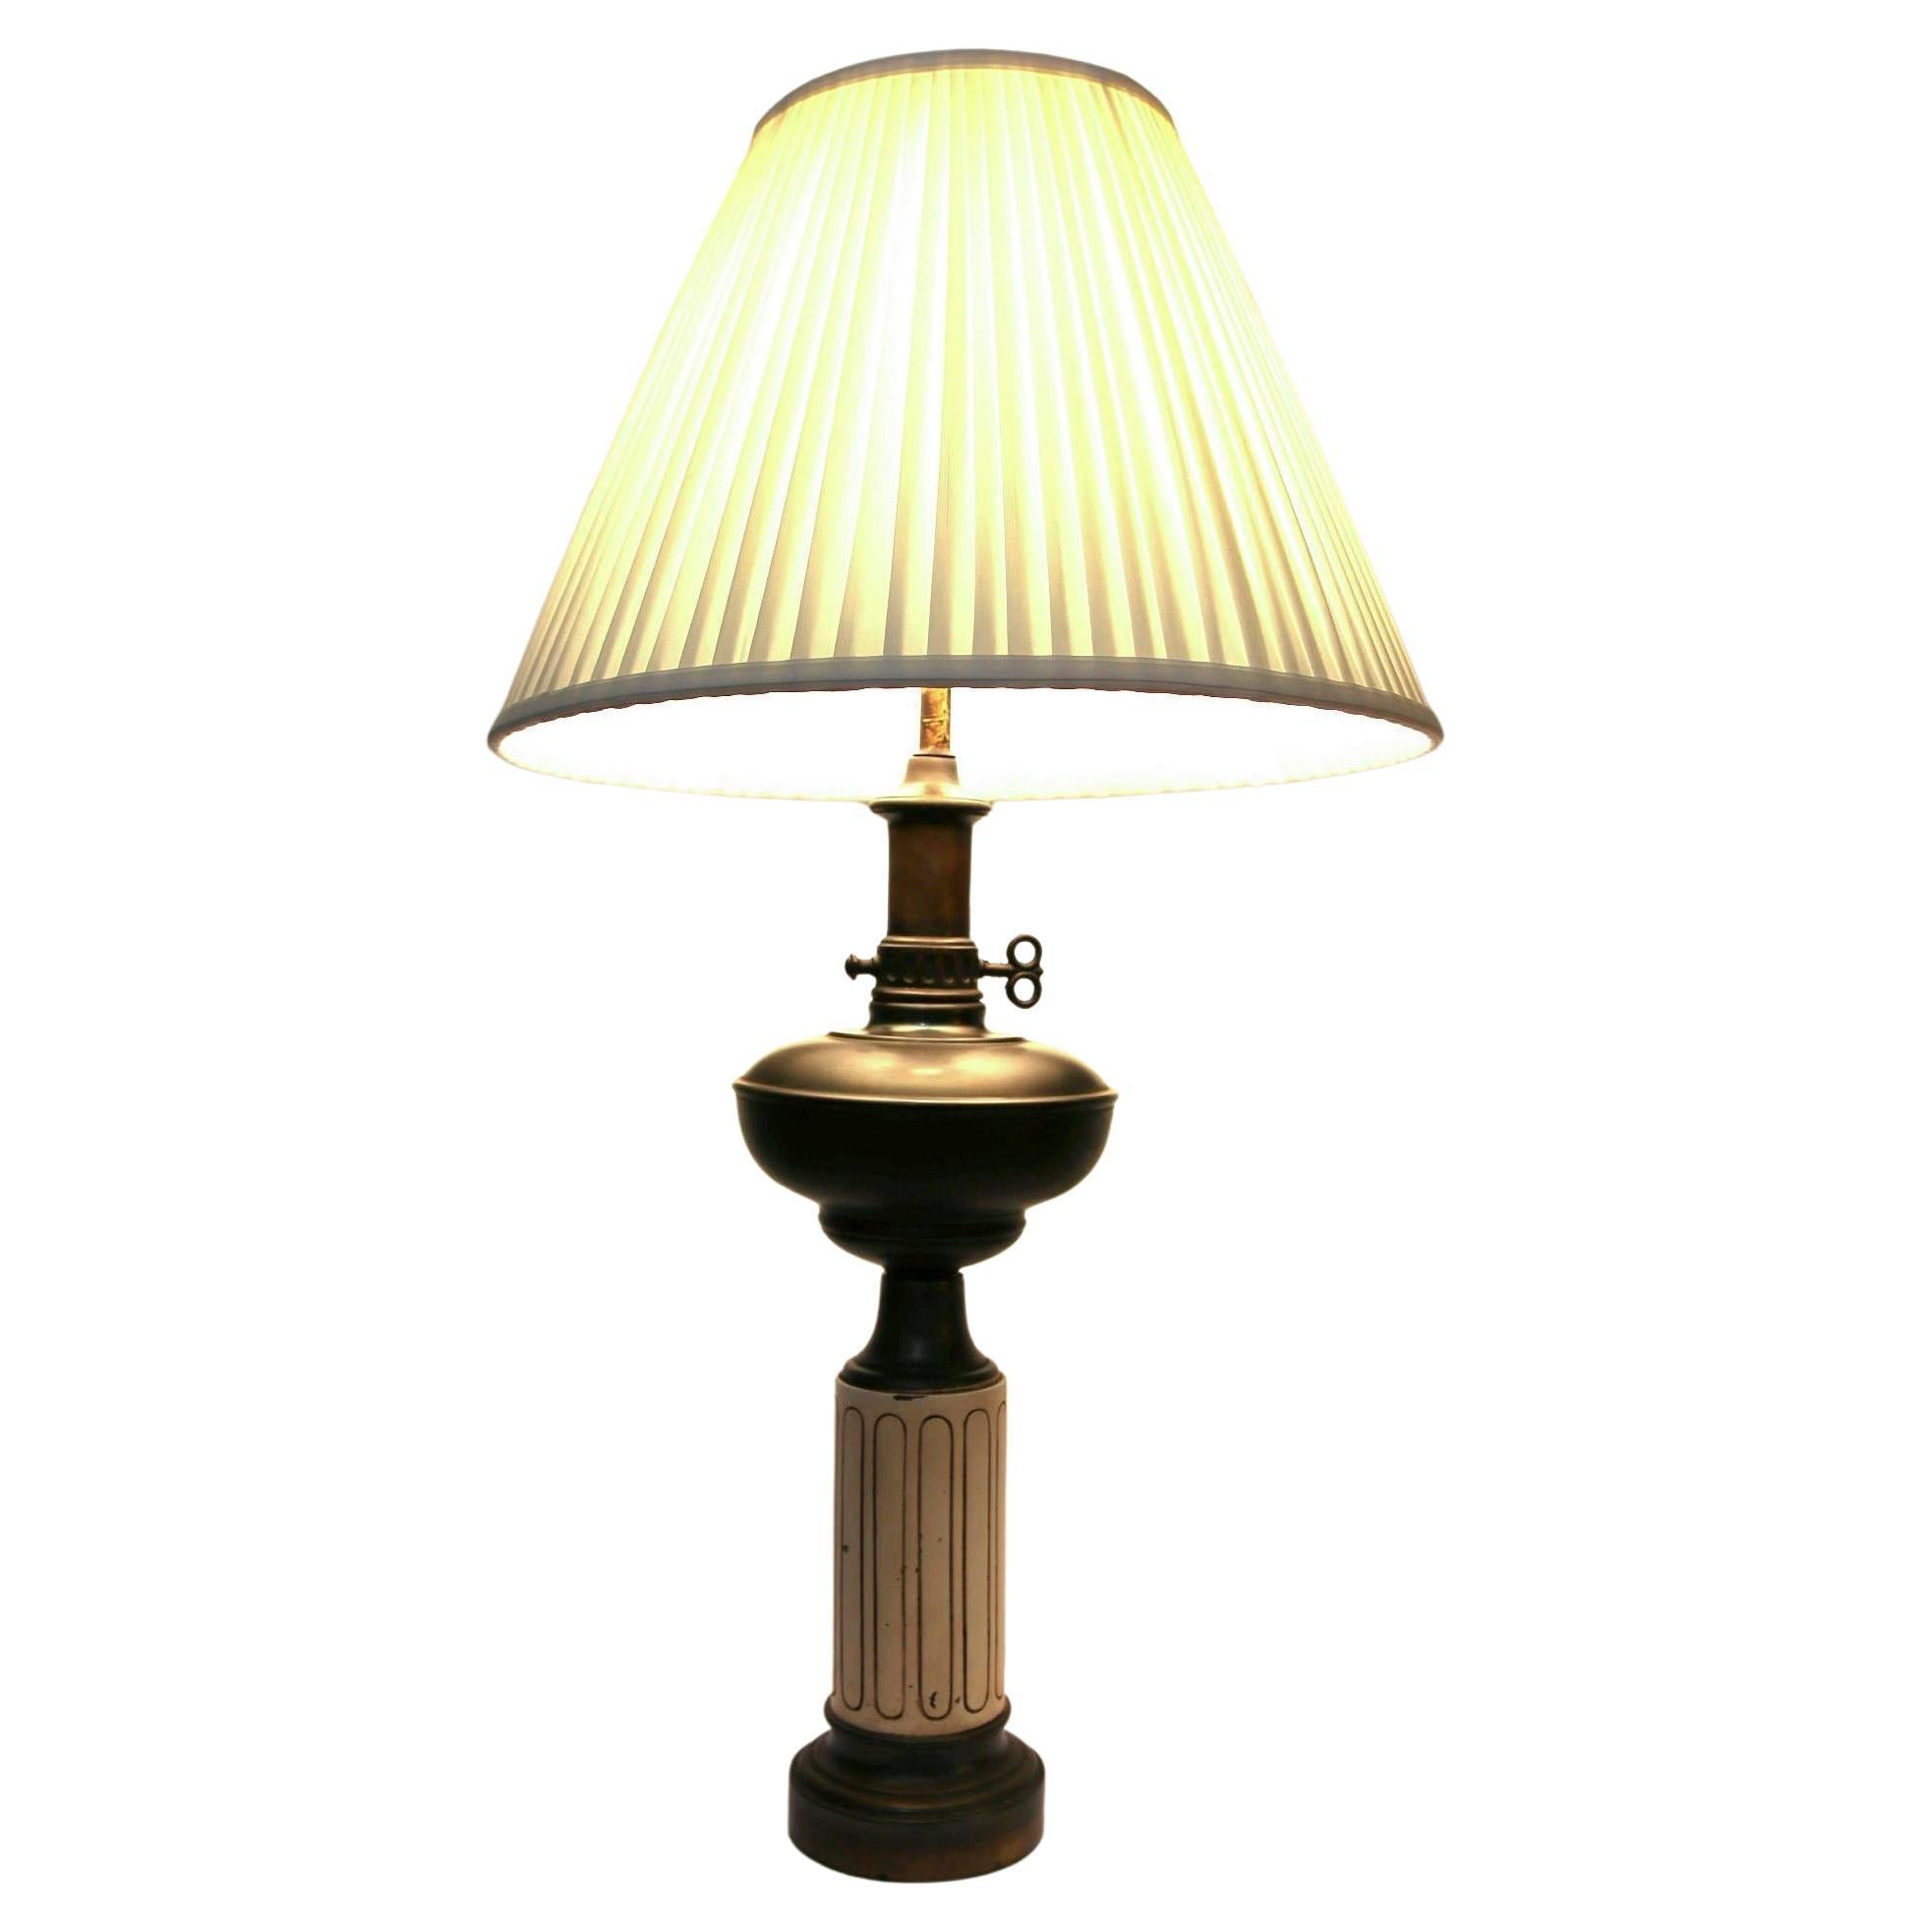 Lampe à huile transformée du 19e siècle avec abat-jour